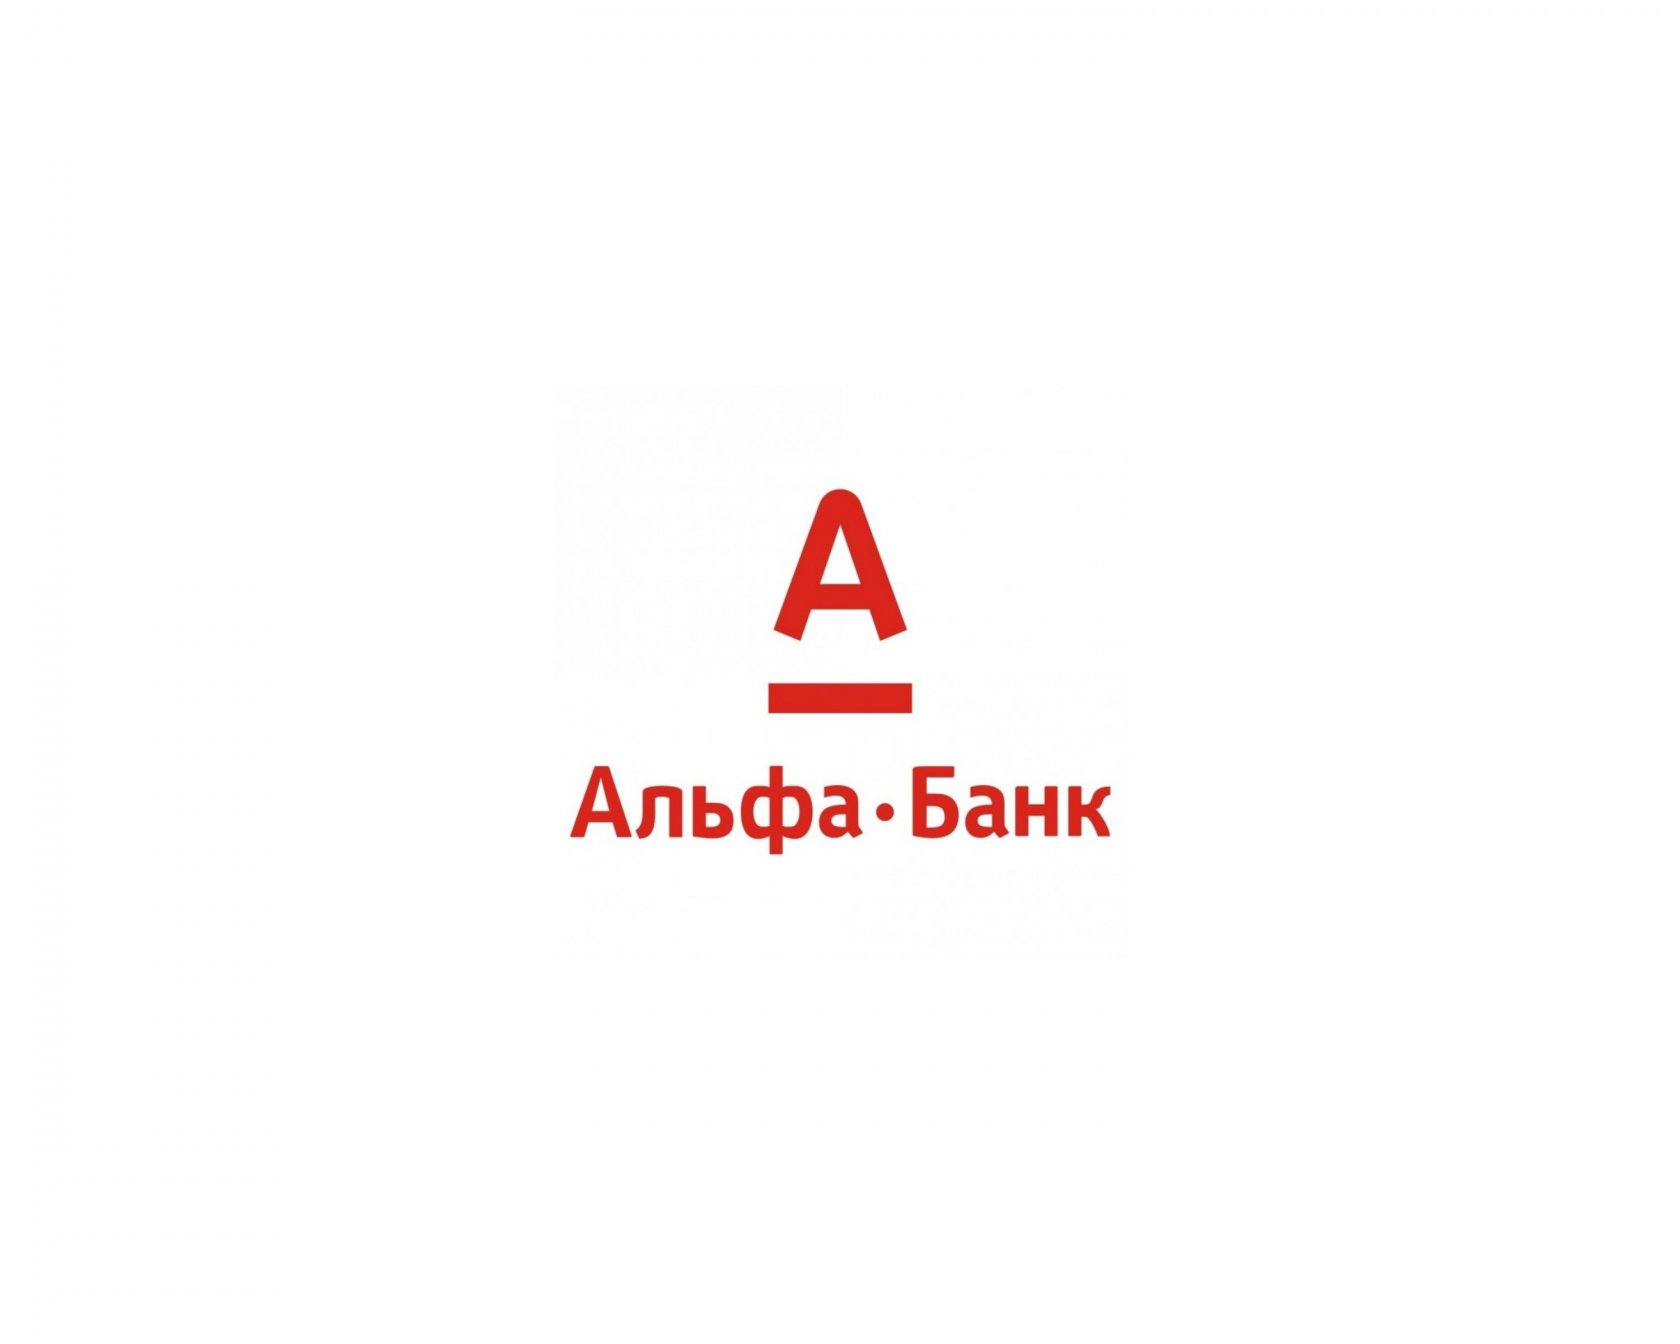 Альфа банк через сайт. Эмблема Альфа банка. Альфа банк логотип на белом фоне. Алеф банк. Альфа банк иллюстрации.